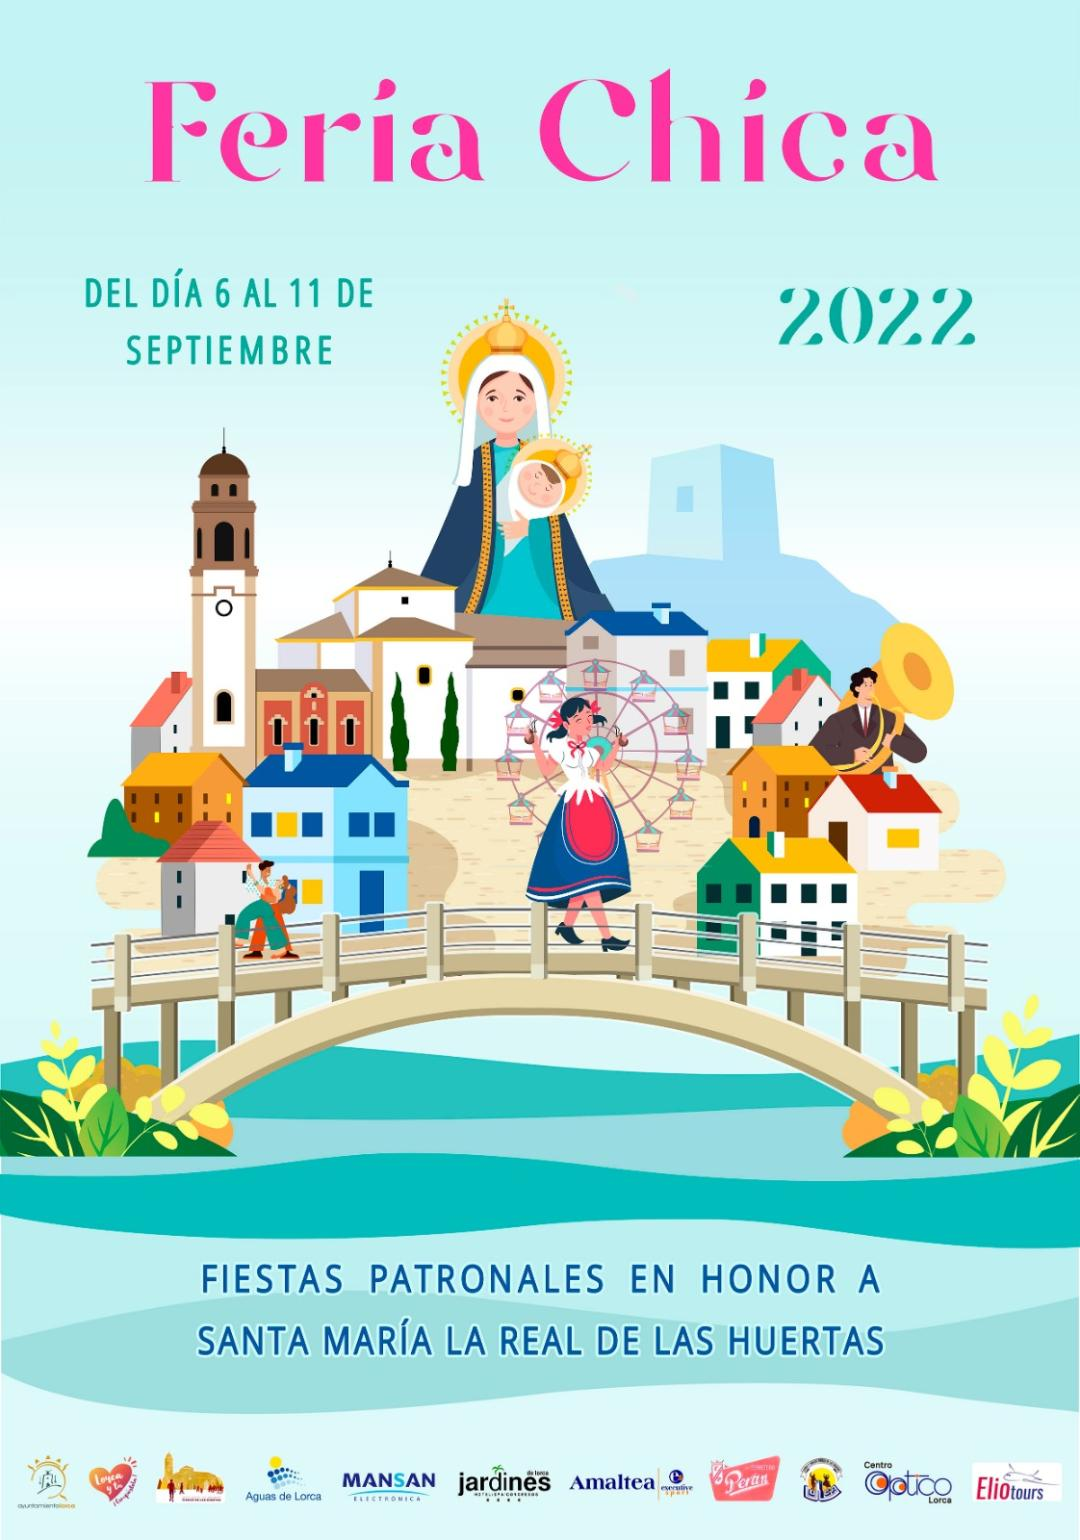 La Feria Chica “vuelve este 2022 en todo su esplendor” con los conciertos de “Siempre Así” y Henry Méndez y una veintena de actividades para celebrar las fiestas de la Virgen de las Huertas